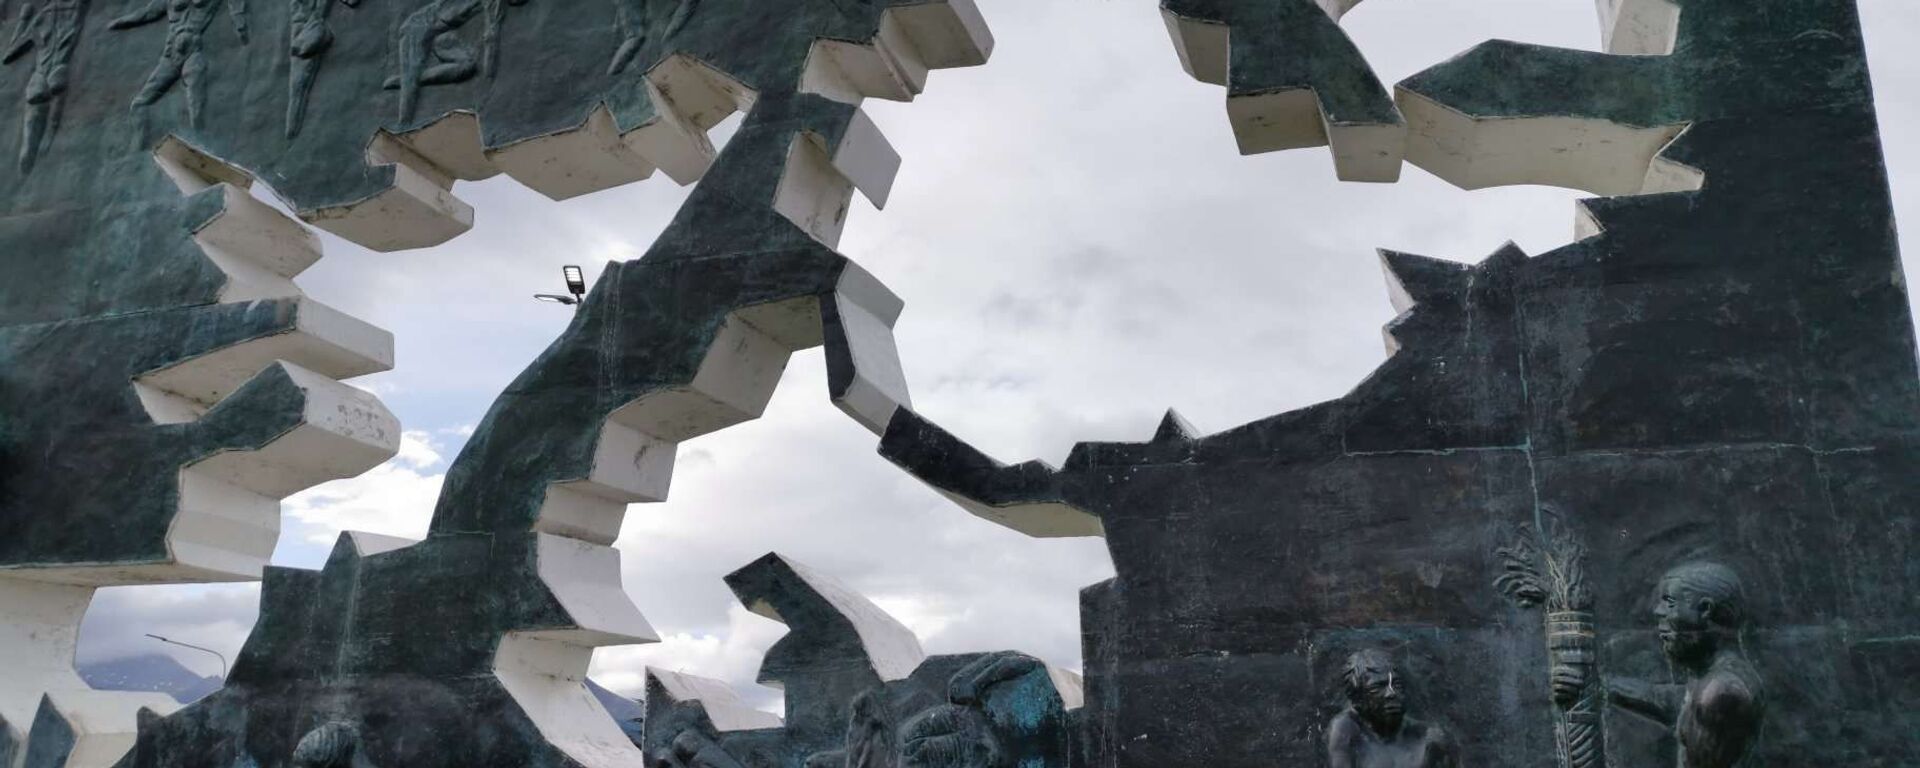 Monumento a los Caídos en Malvinas, en Ushuaia, Argentina - Sputnik Mundo, 1920, 14.06.2021